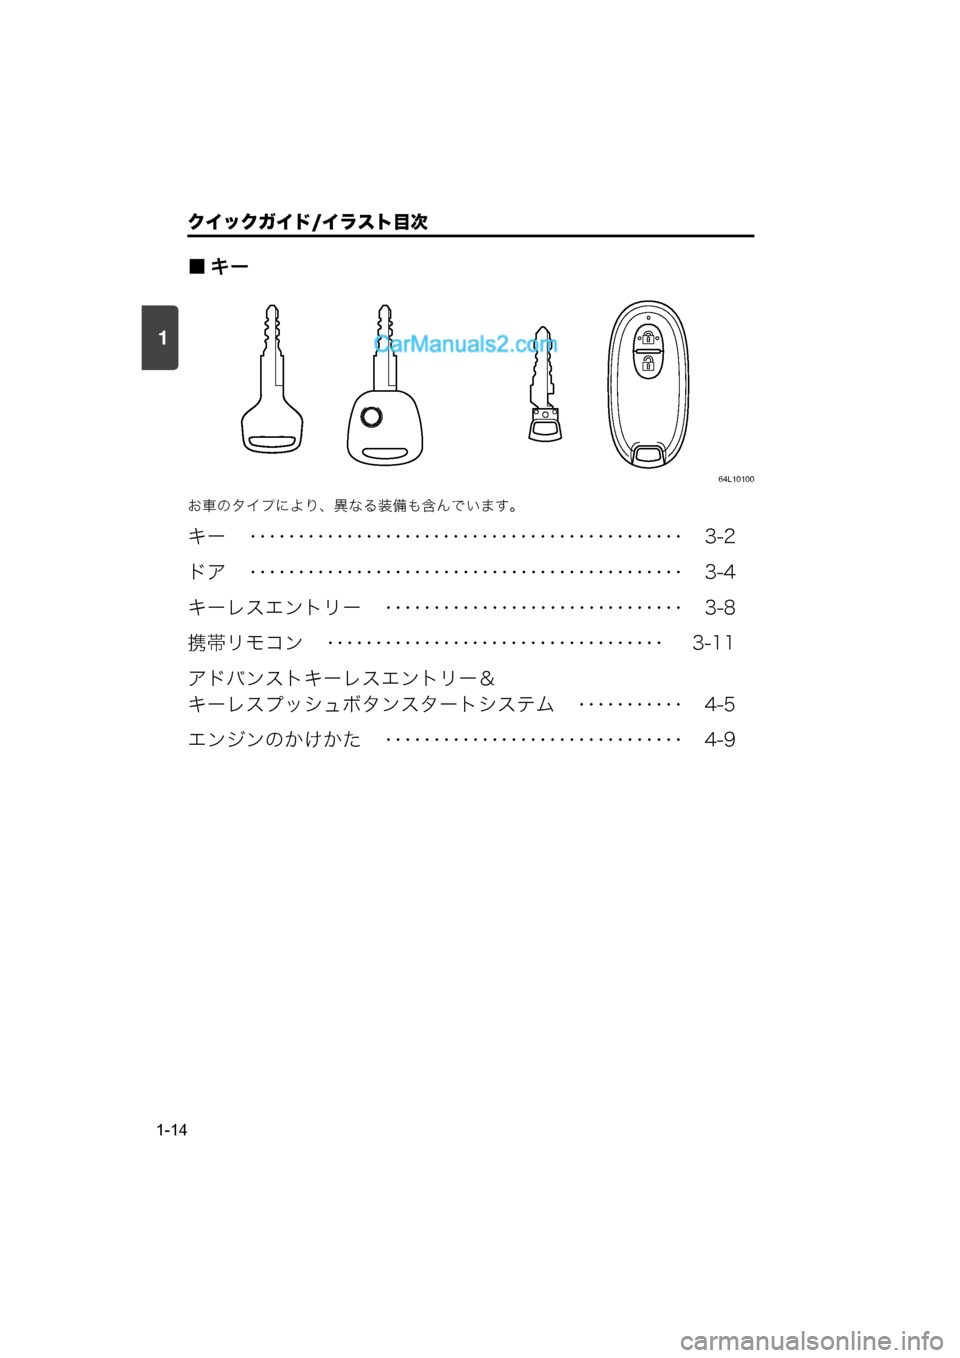 MAZDA MODEL CARROL 2015  取扱説明書 (キャロル) (in Japanese) 1
クイックガイド/イラスト目次
1-14
■キー
64L10100
お車のタイプにより、異なる装備も含んでいます。
キー　 ･････････････････�